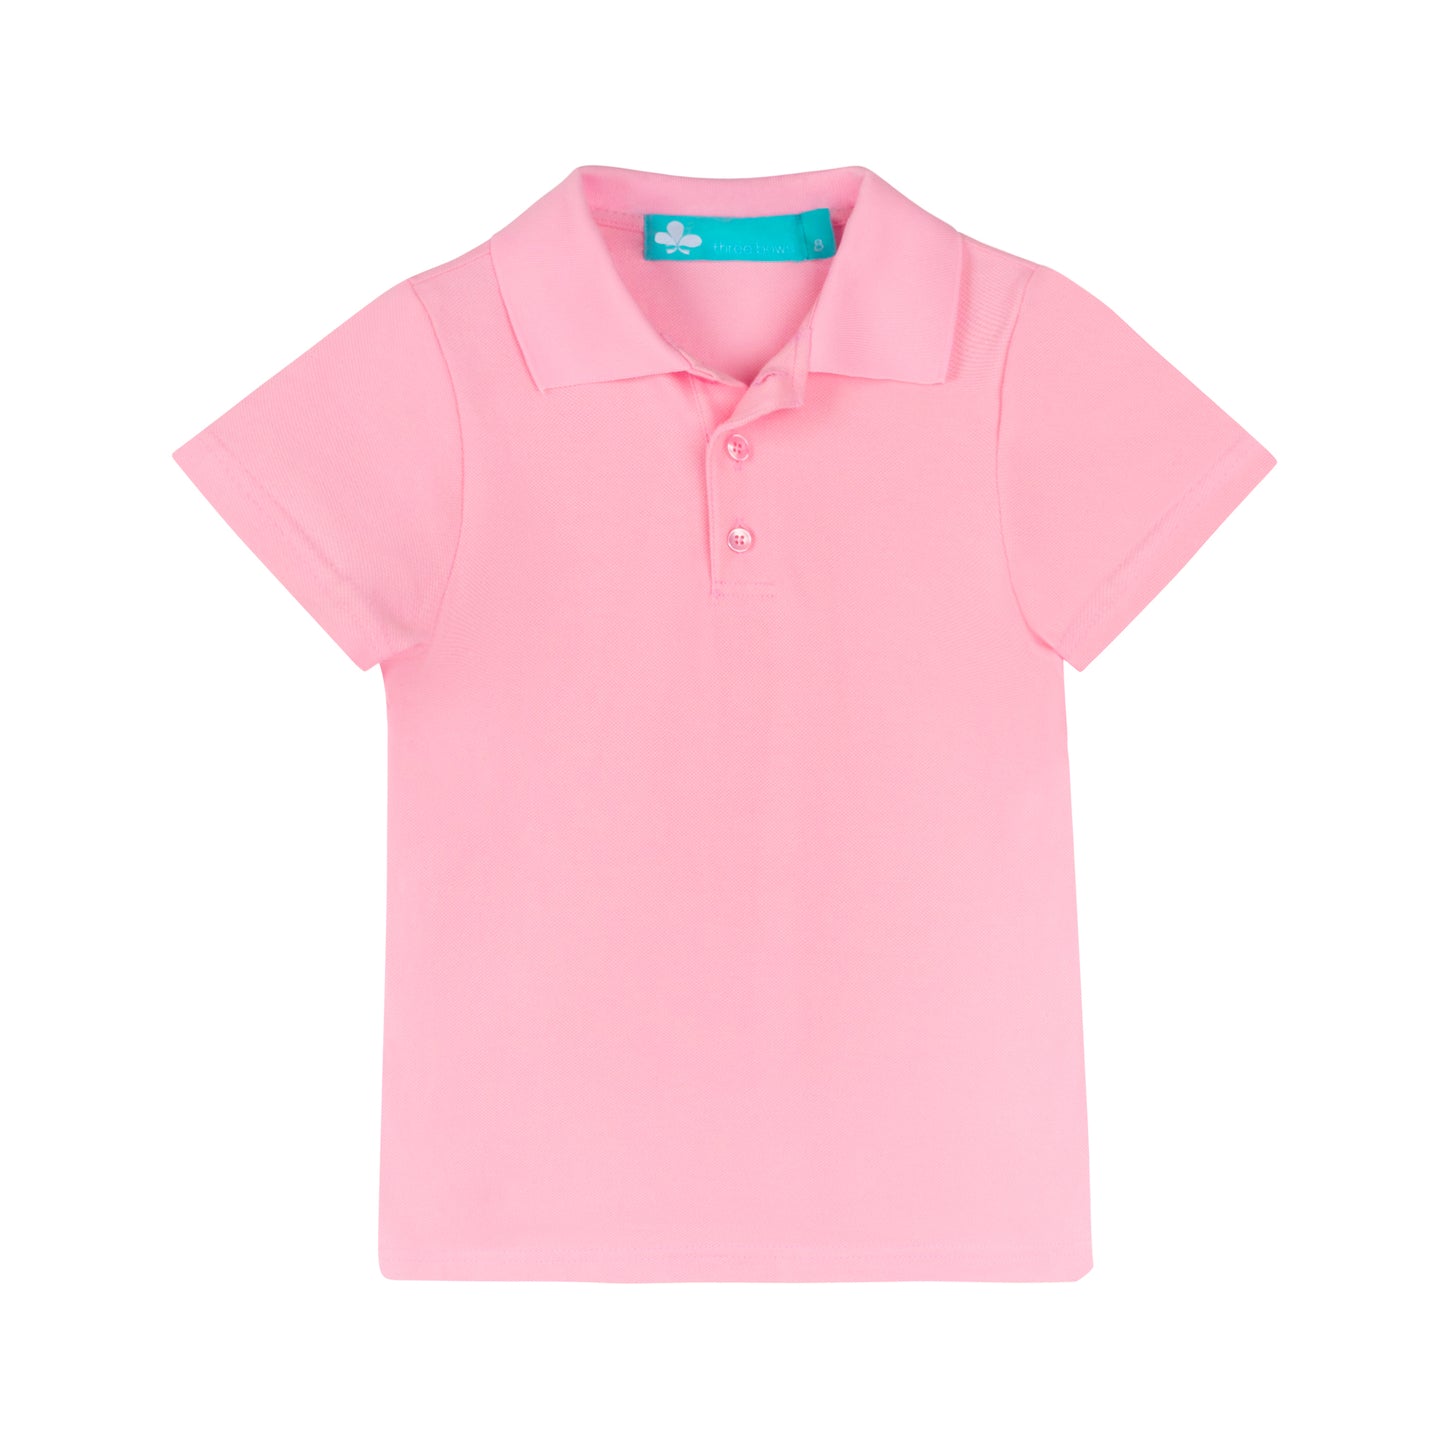 Kids Polo Short Sleeve T-shirt- Light Pink